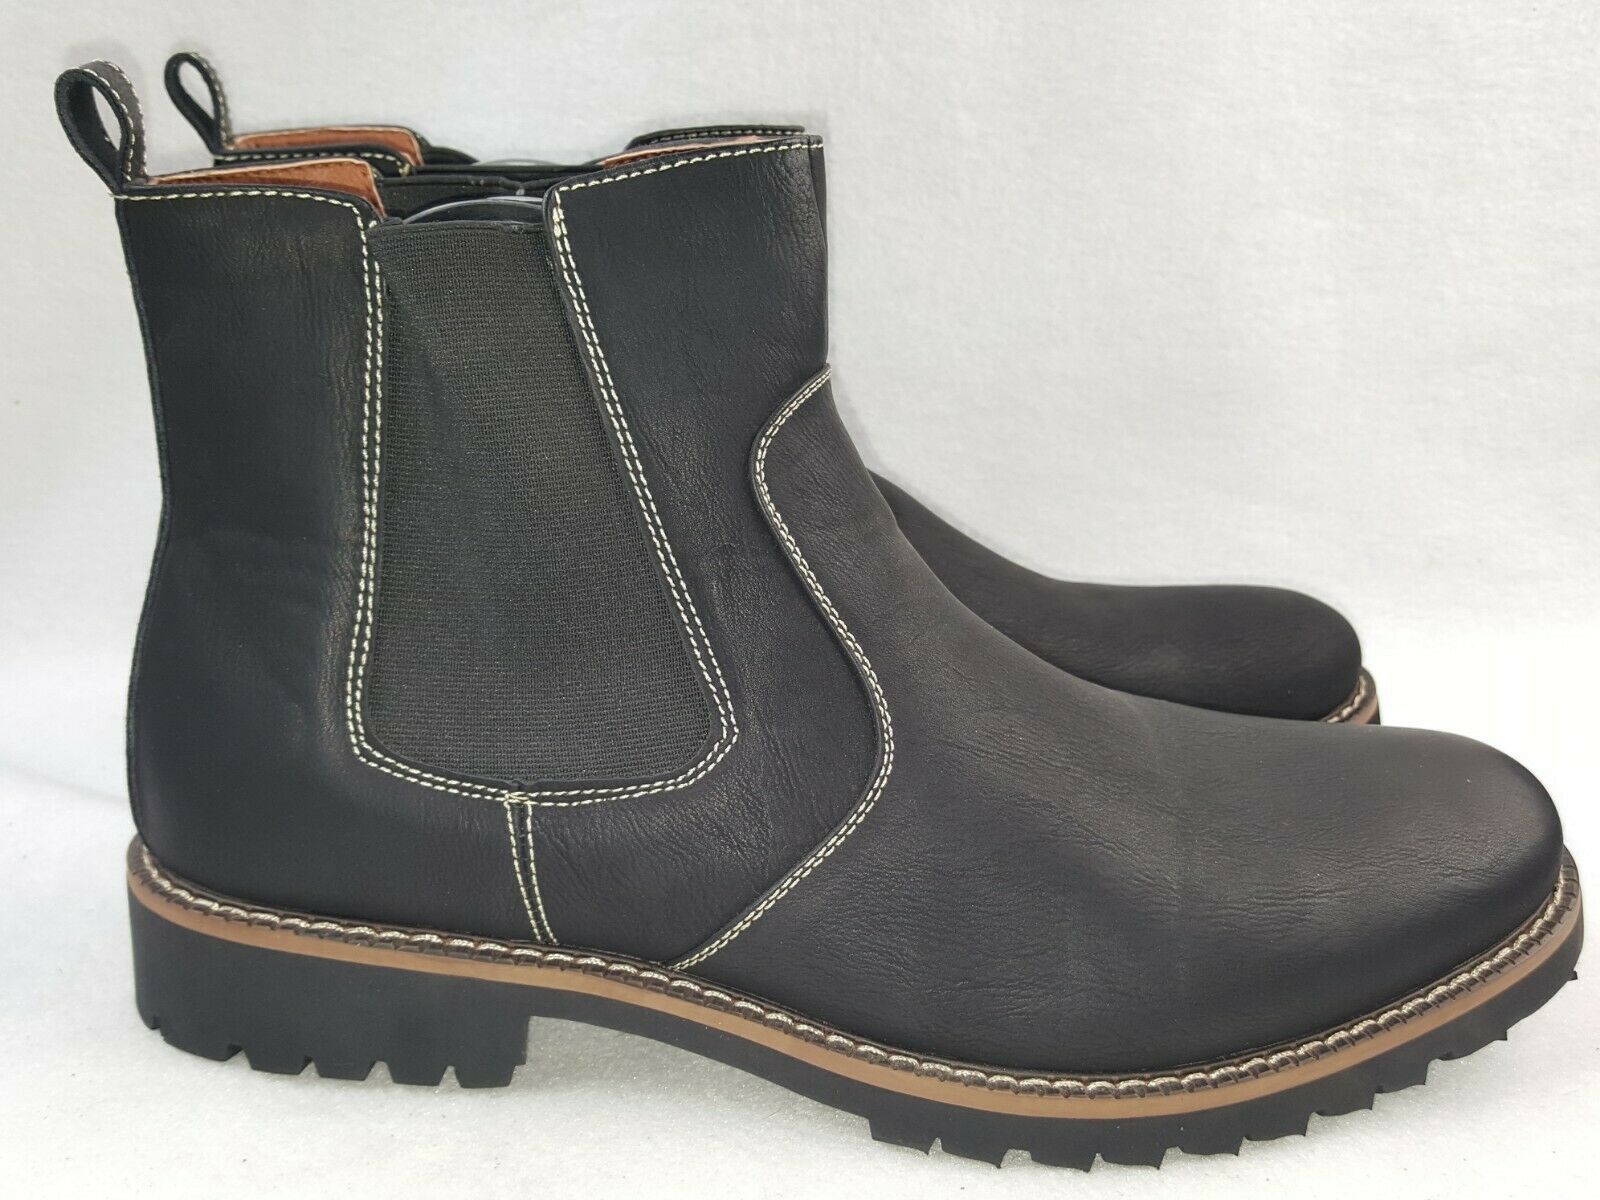 Ferro Aldo "Jayden" Men's Ankle Boots Size 10 & 10.5